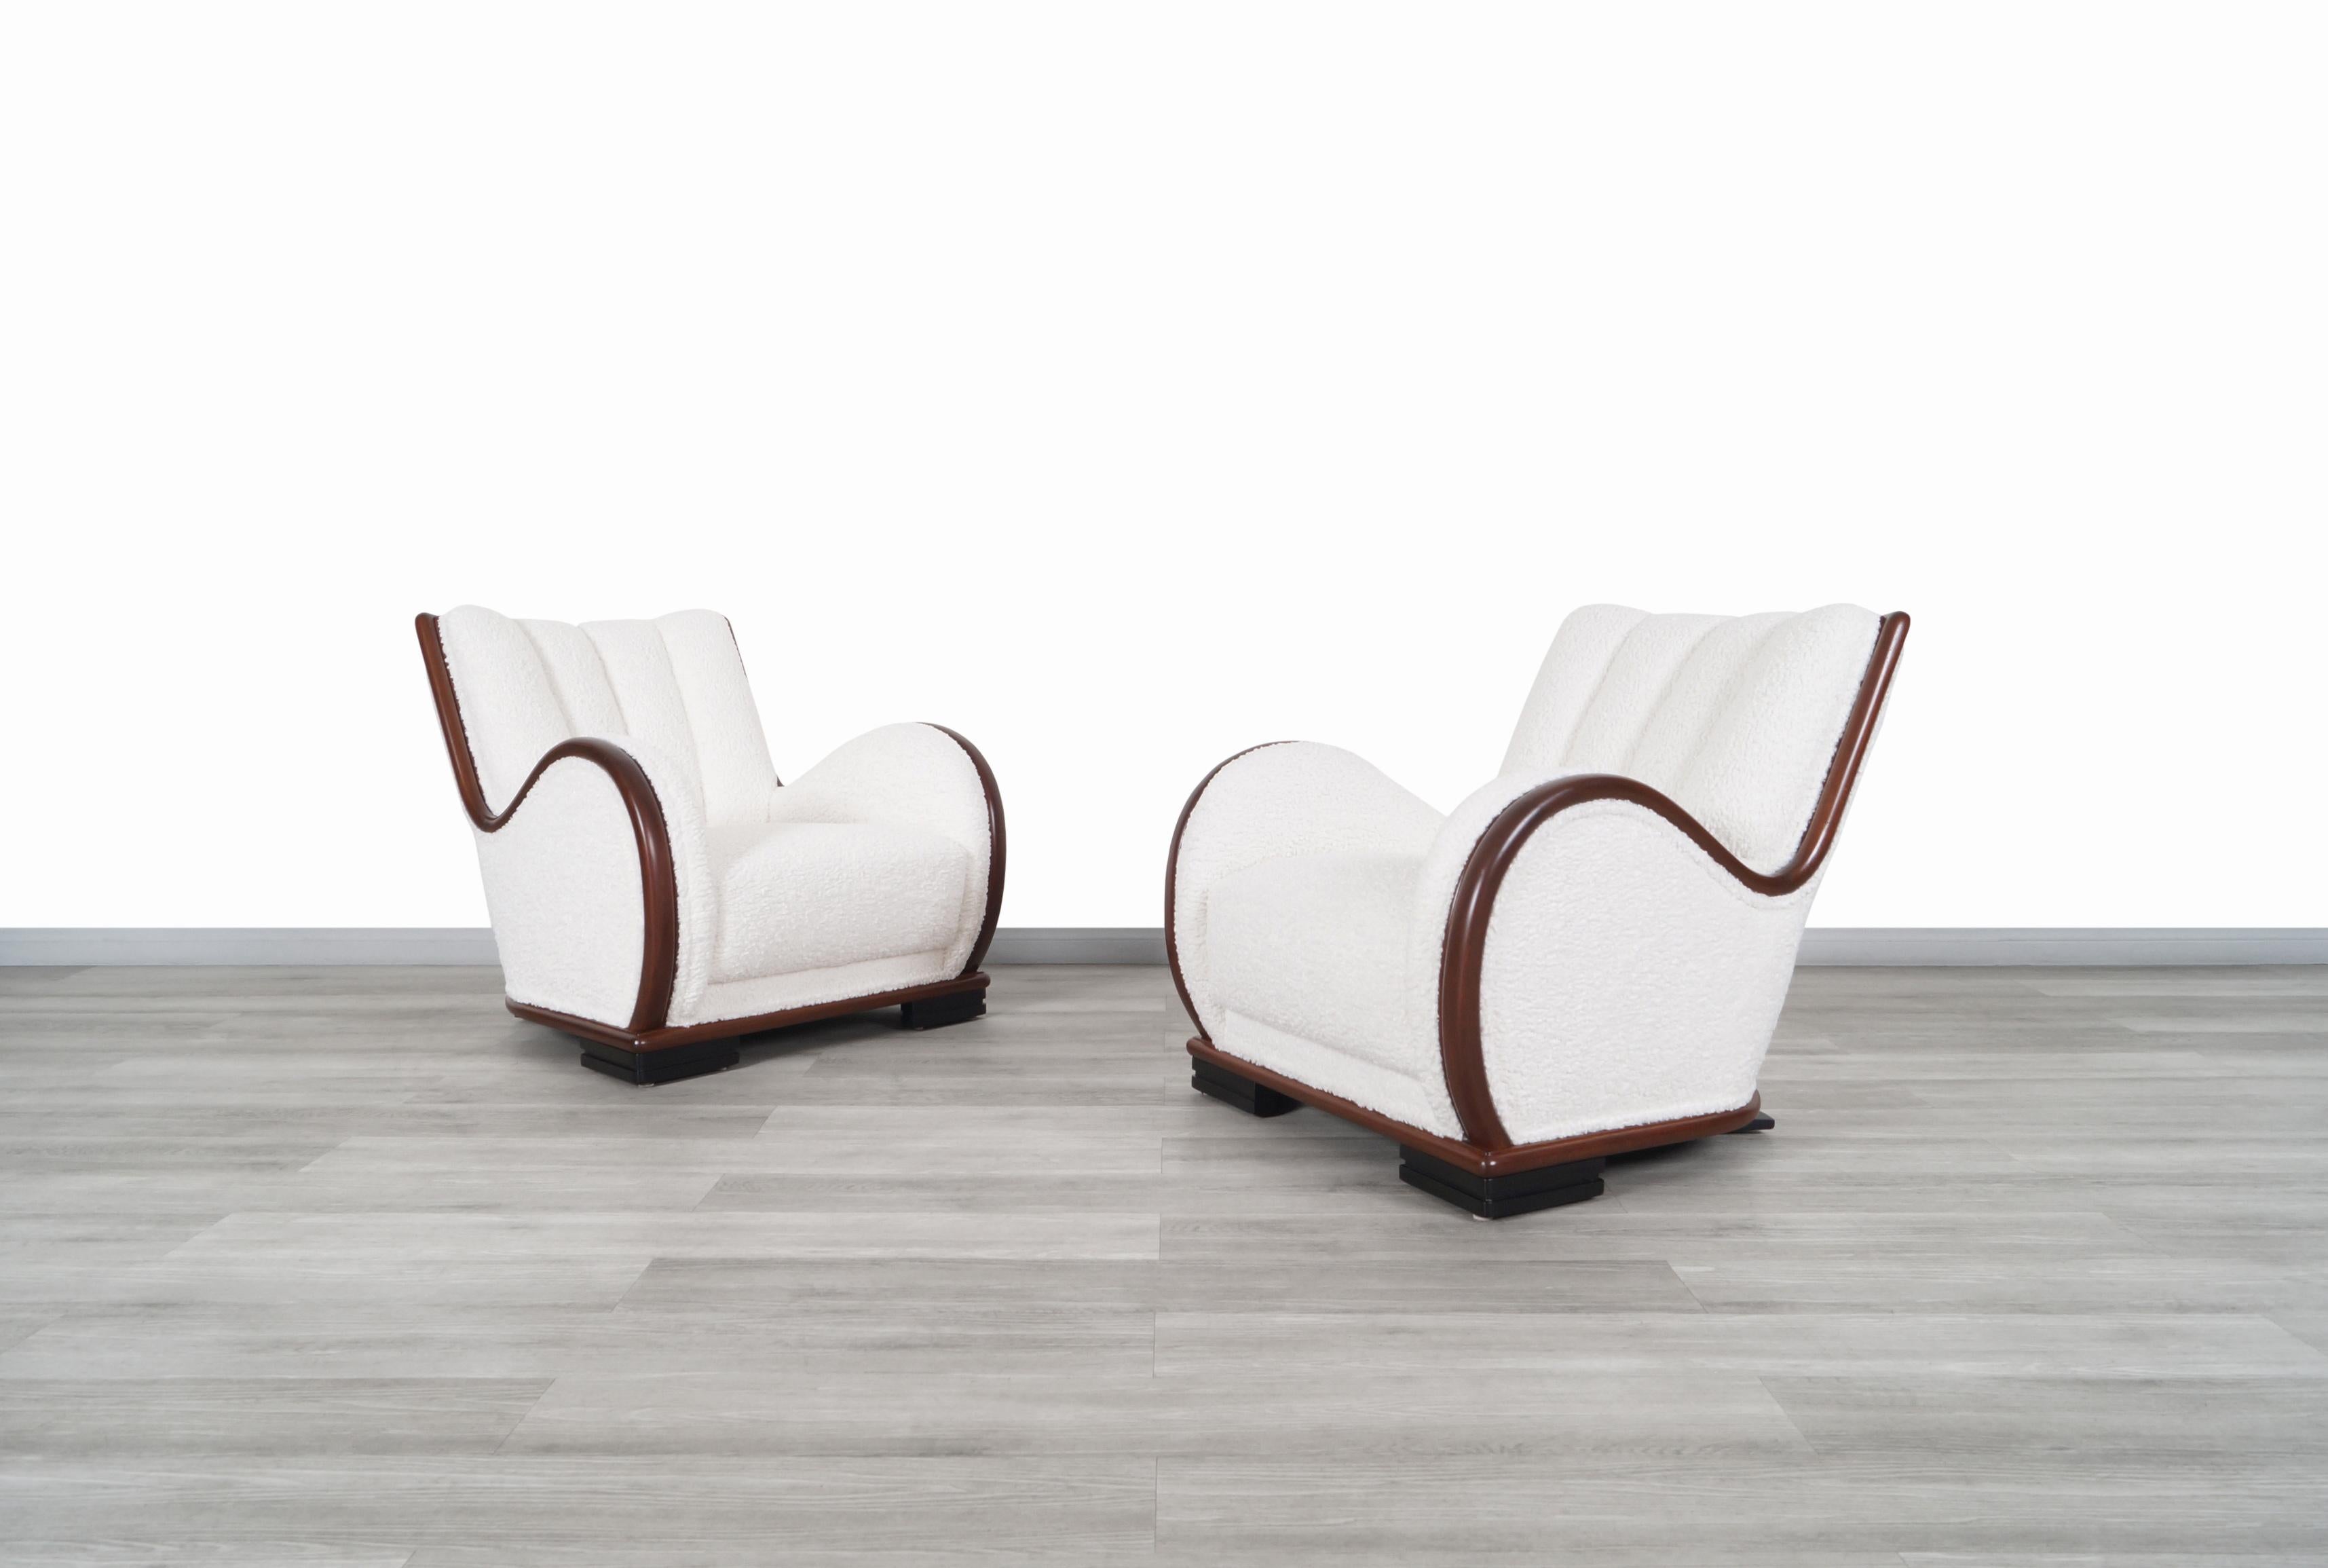 Exceptionnelles chaises longues Art Déco vintage en noyer conçues et fabriquées aux États-Unis, vers les années 1940. Cette paire de chaises présente un design raffiné où ressortent les bords arrondis qui constituent la structure de la chaise.